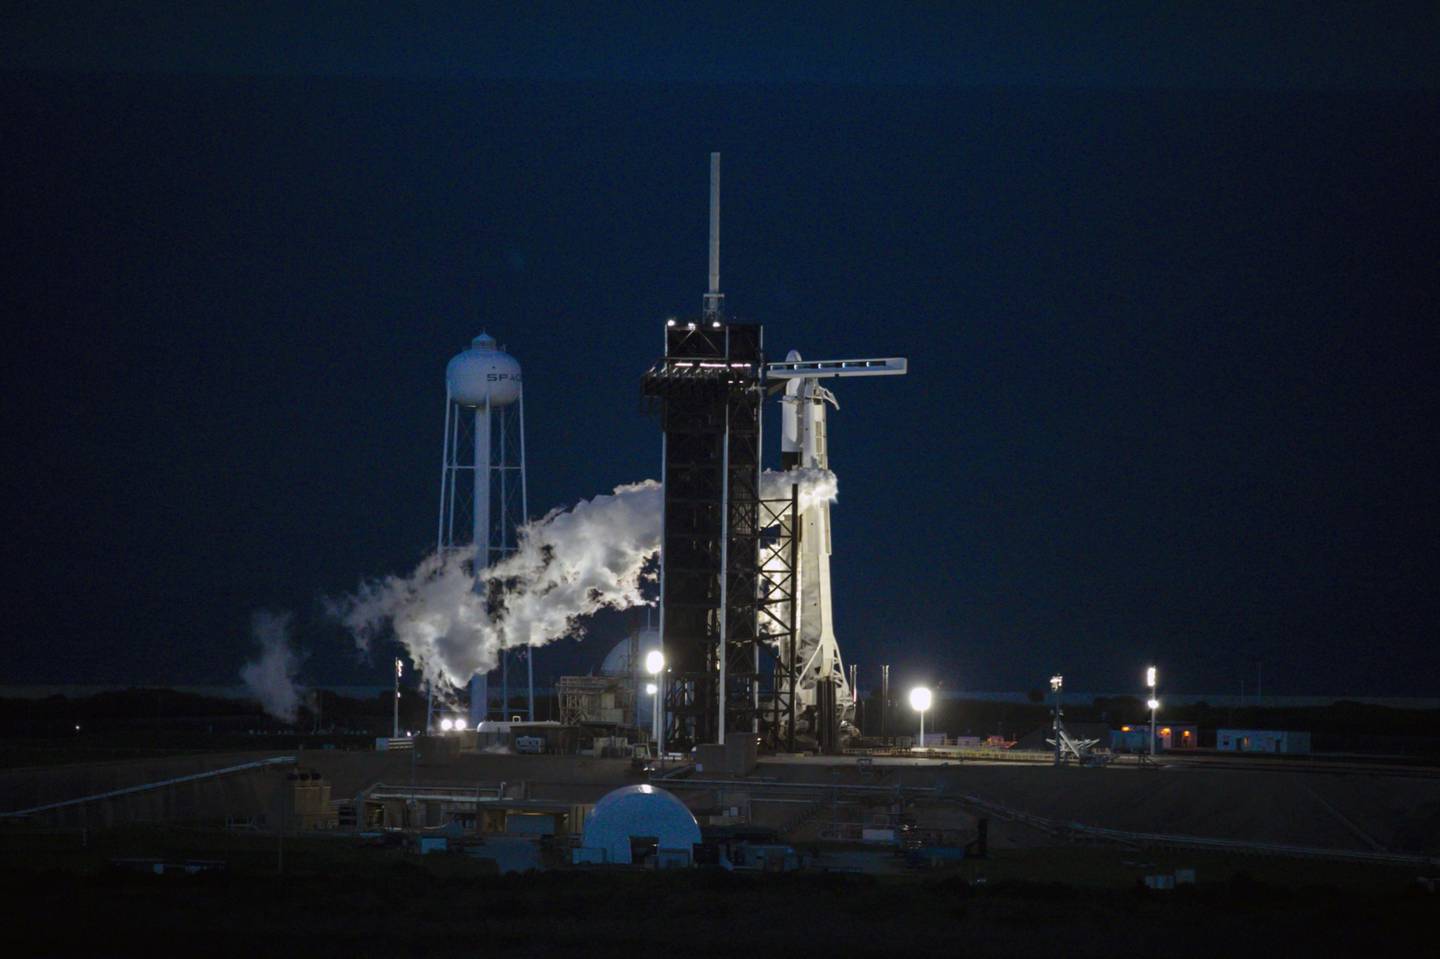 Un cohete Falcon 9 de SpaceX y la nave espacial Dragon, que transporta astronautas no profesionales, despegan de la plataforma de lanzamiento 39A del Centro Espacial Kennedy de la NASA durante la misión Inspiration4 en Merritt Island, Florida, Estados Unidos, el miércoles 15 de septiembre de 2021. Fotógrafa: Eva Marie Uzcategui/Bloomberg